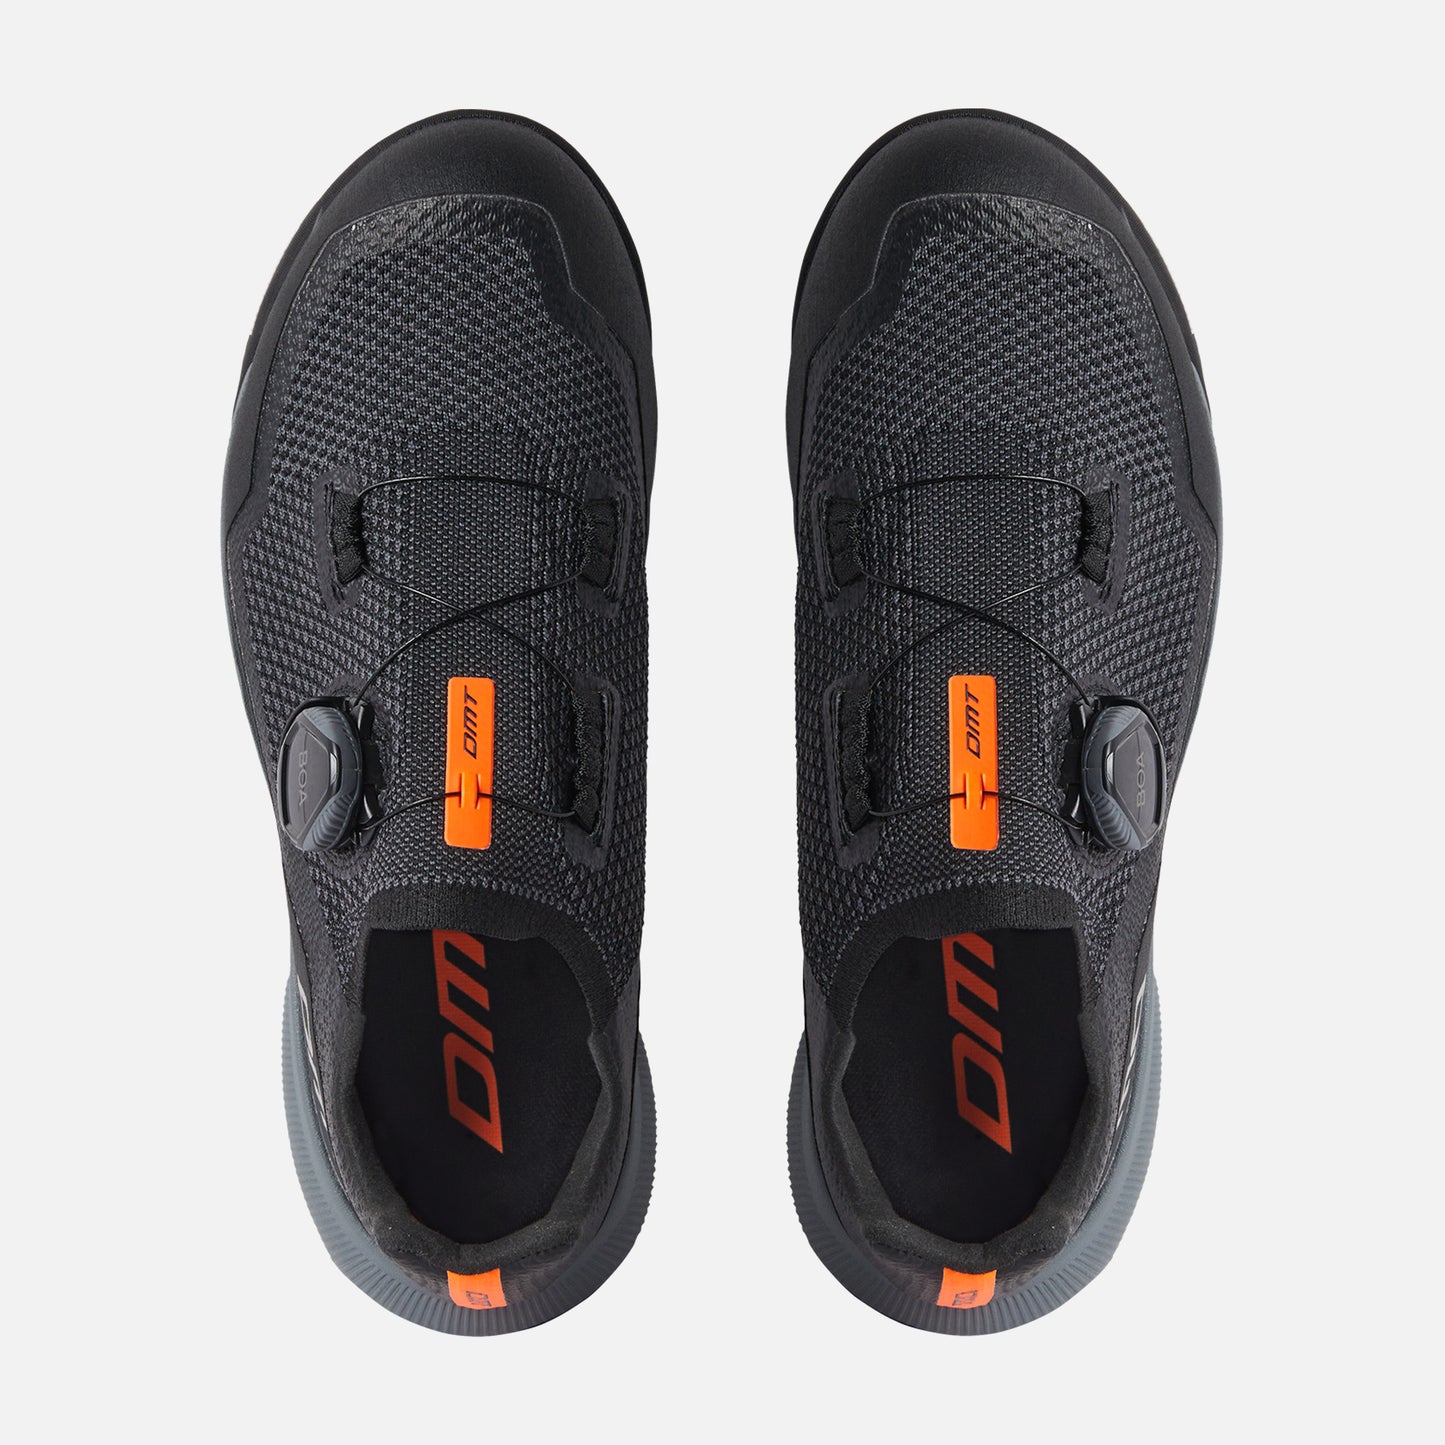 DMT E1, las nuevas zapatillas de la firma para aficionados al Enduro